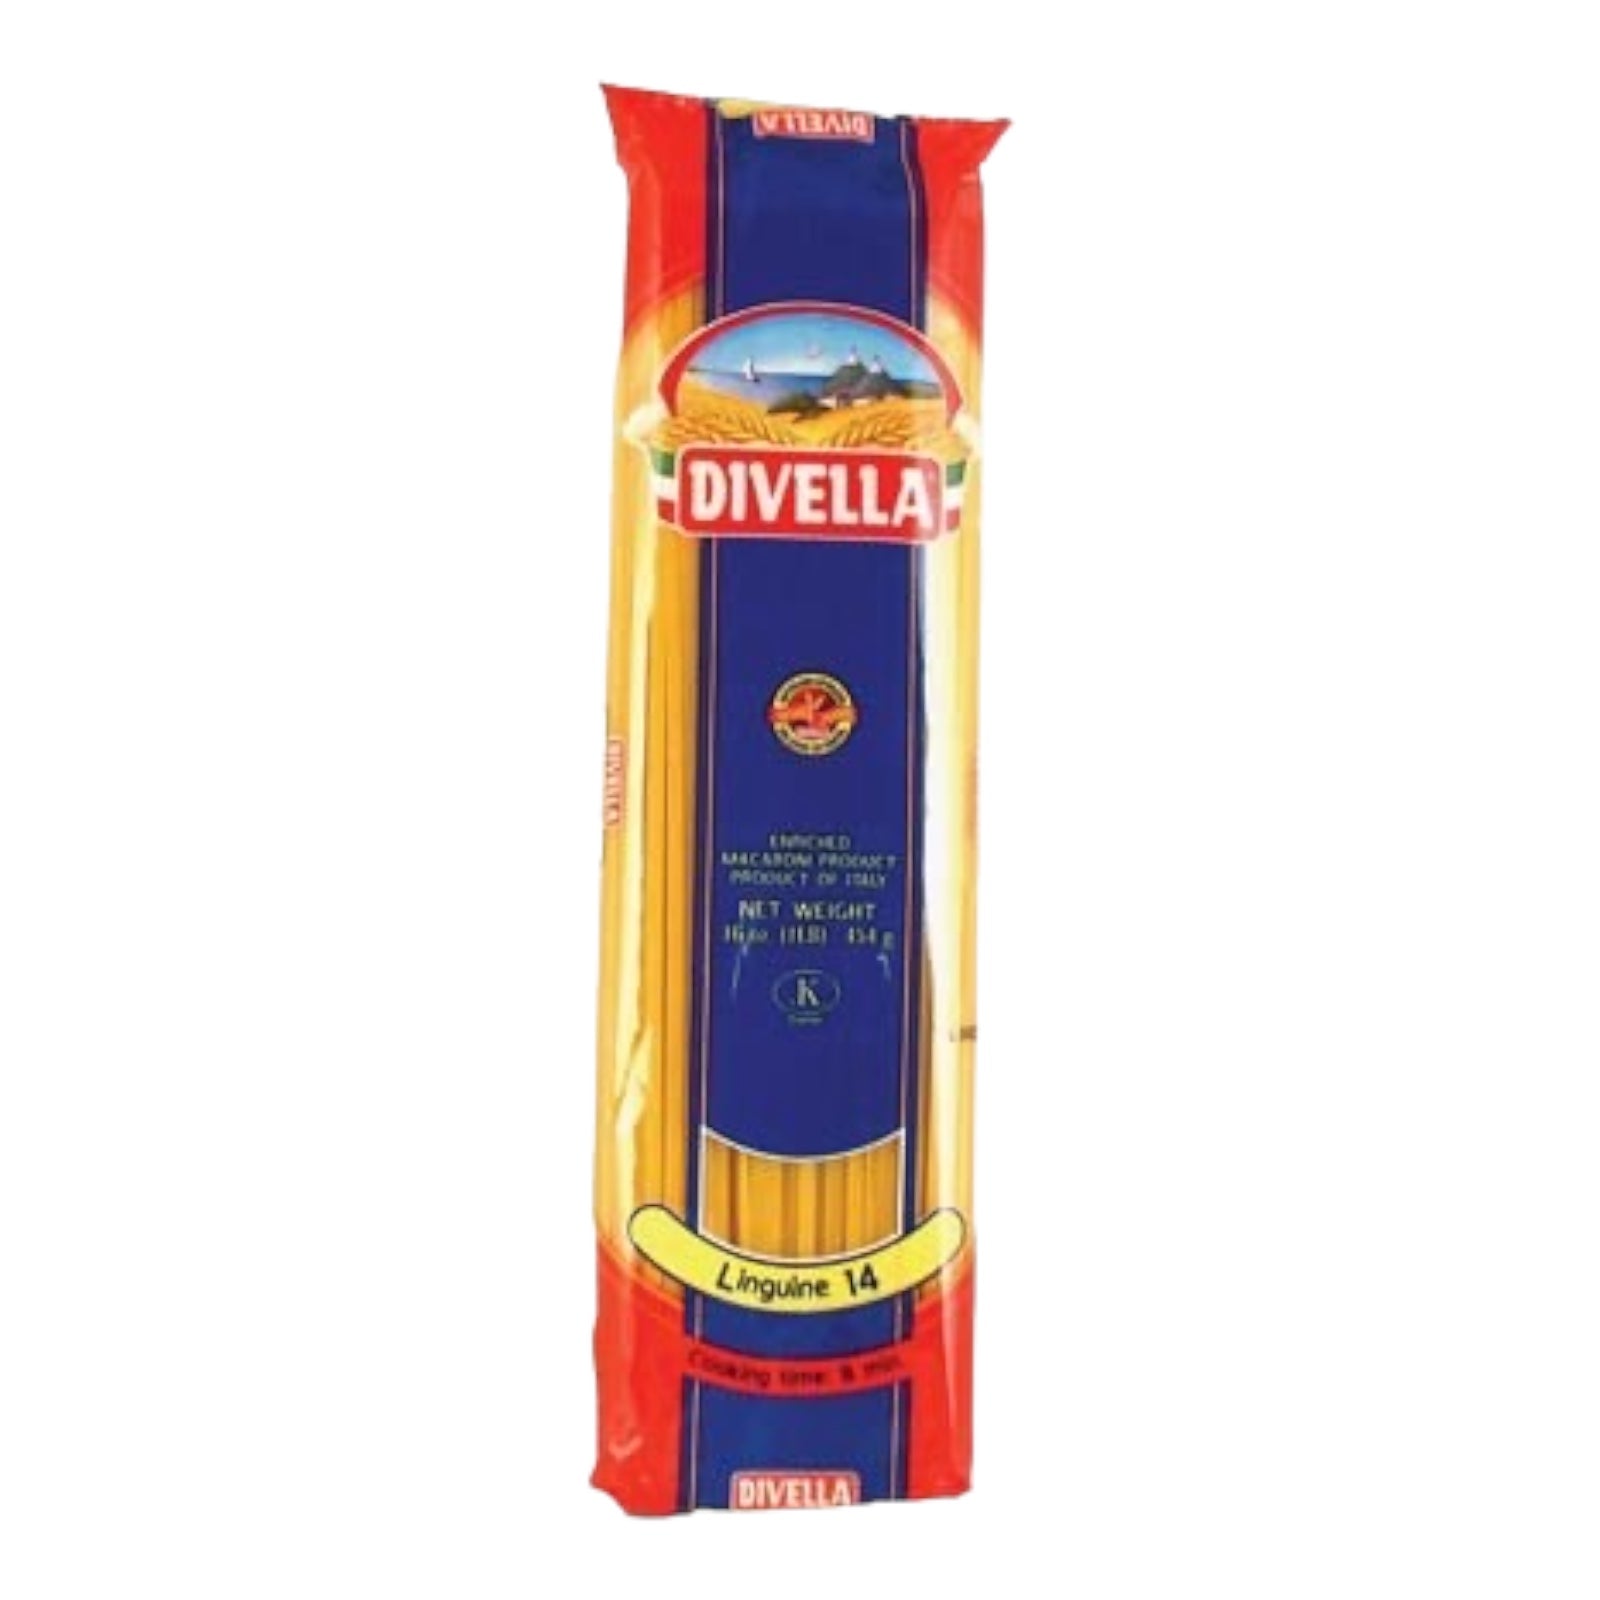 Divella Linguine No 14- 16 oz